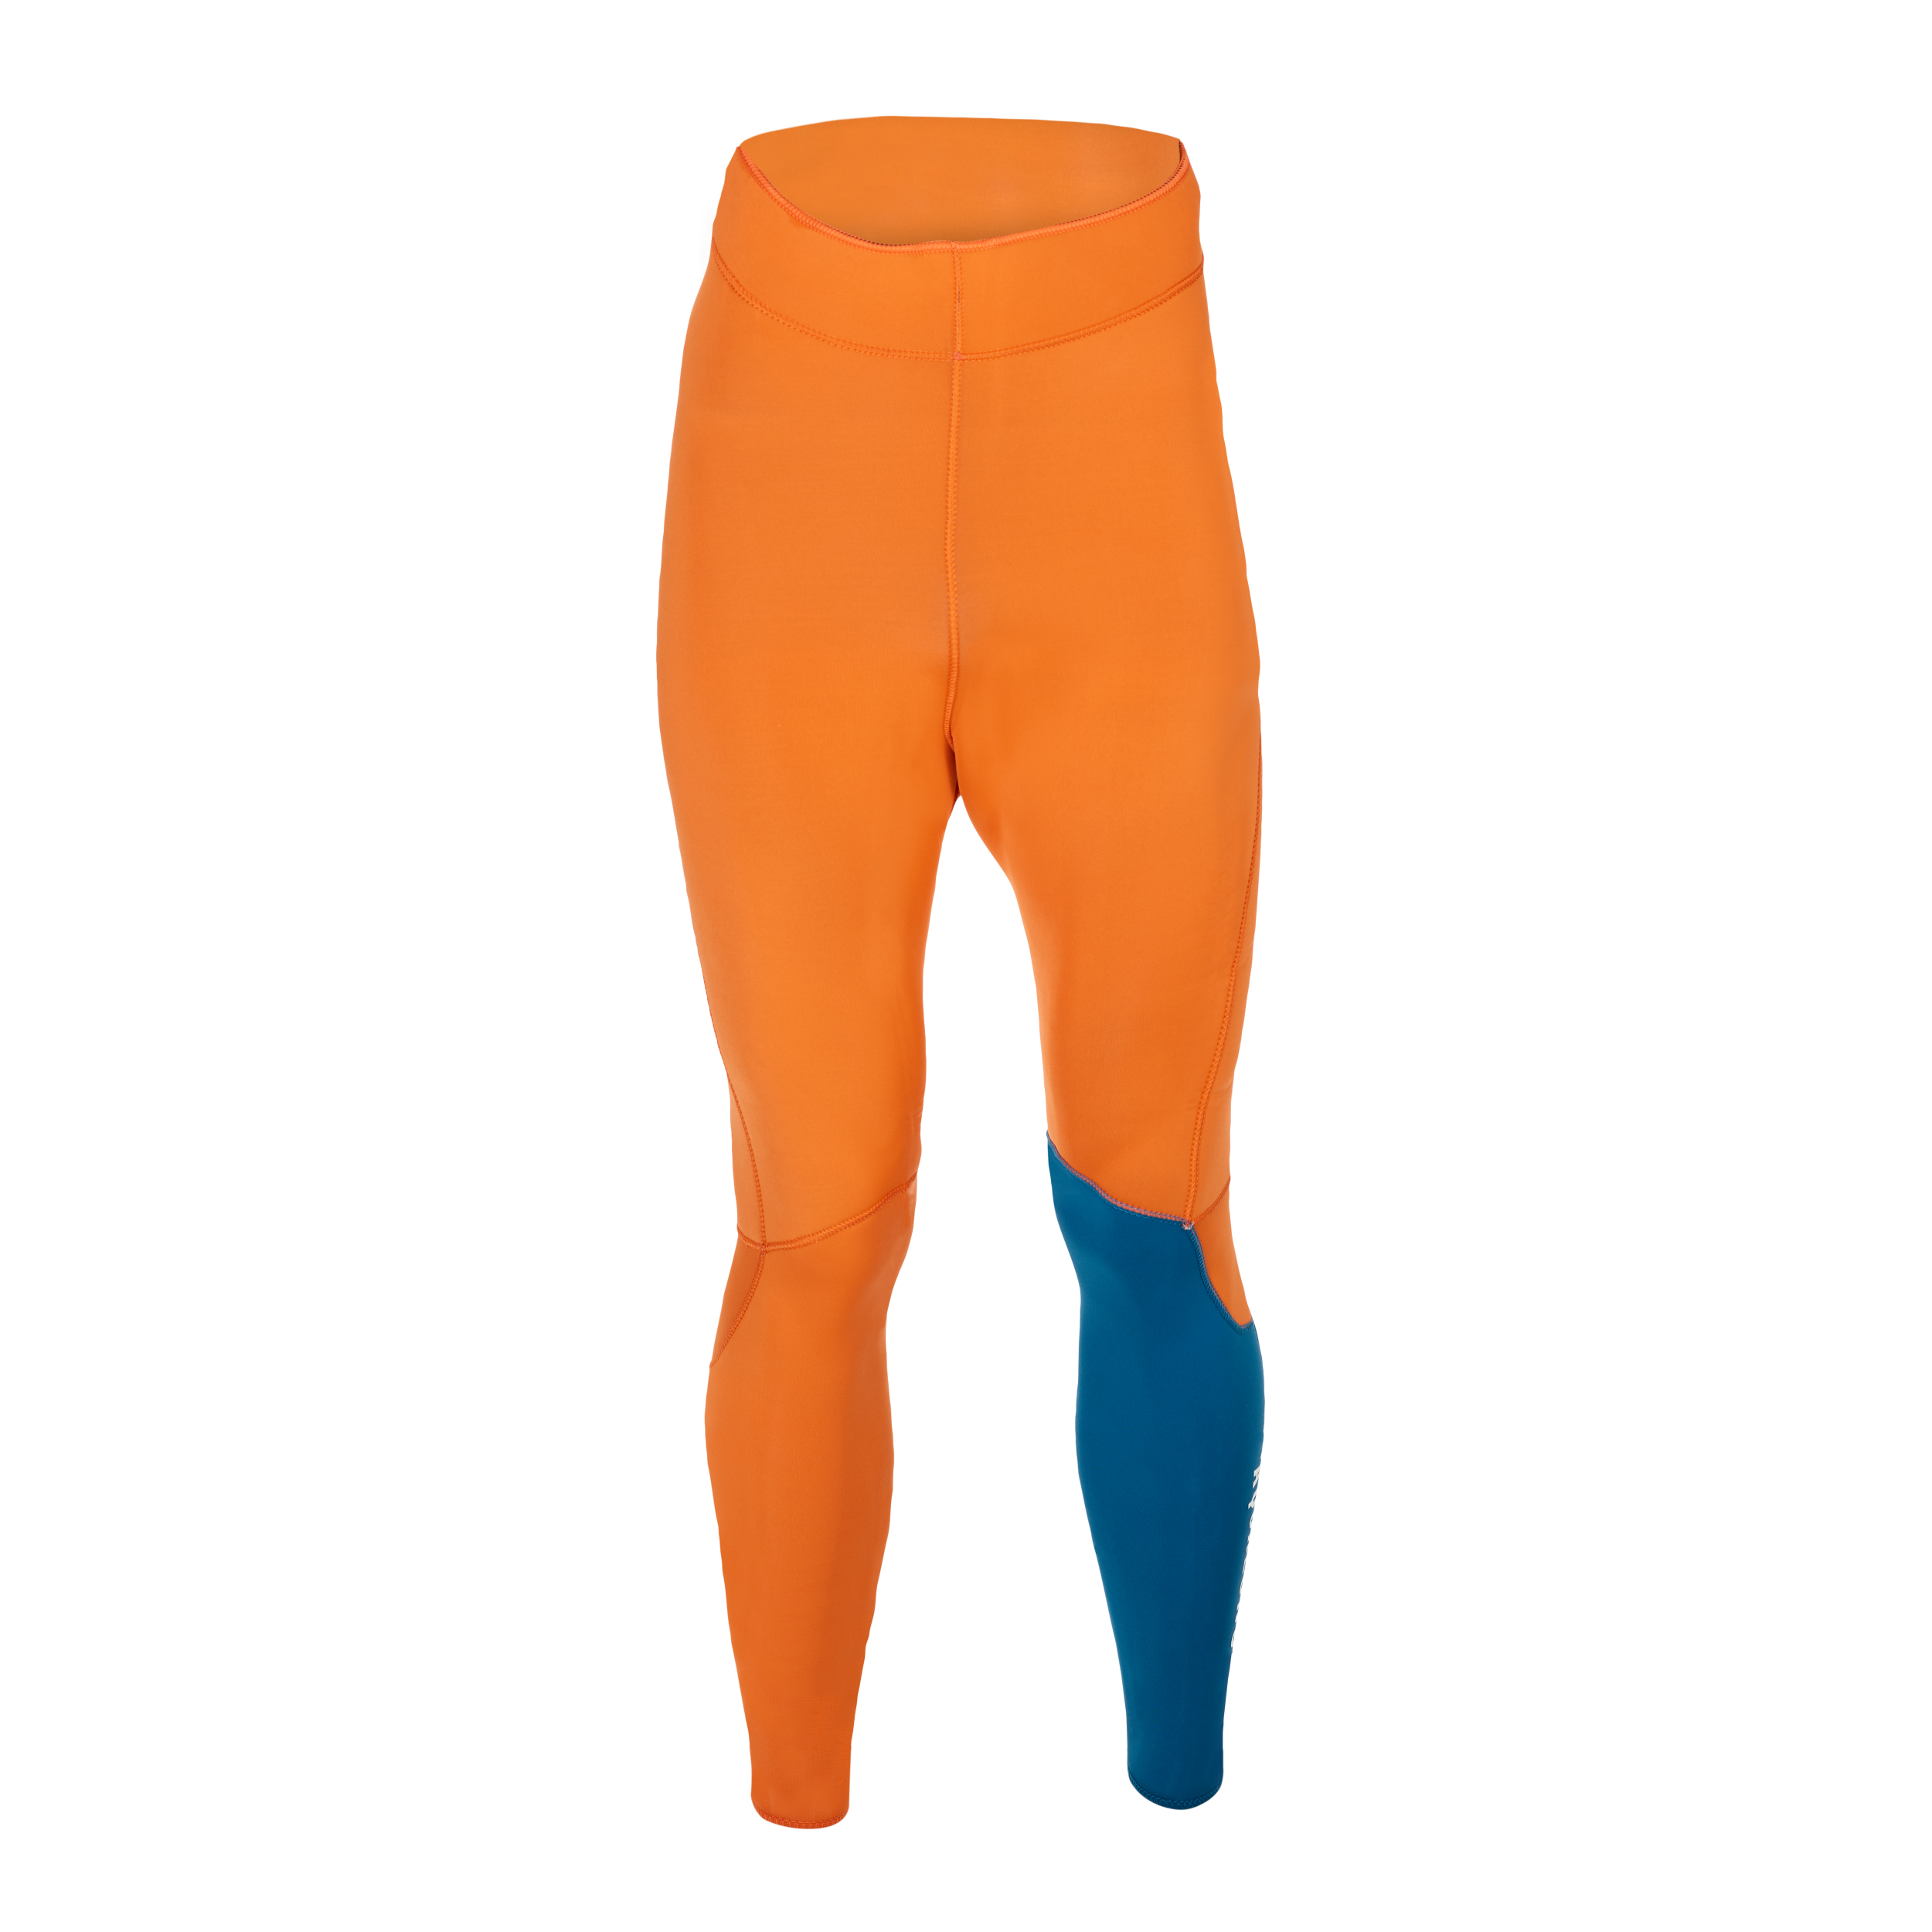 Aqualung Aqua Lung Freeflex Pro Pant : Men S / 5MM / Dark Blue/Orange - Oyster Diving